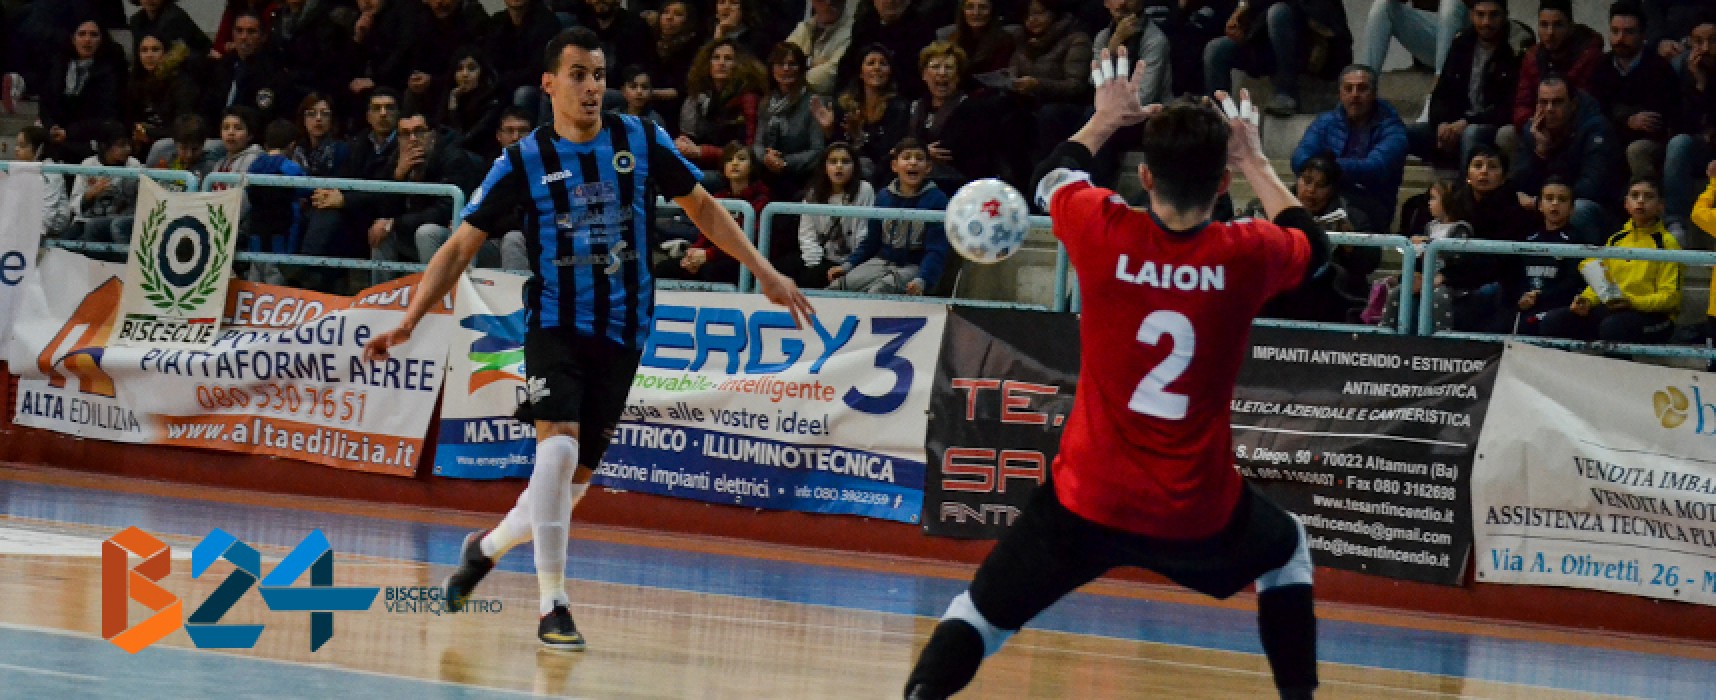 Futsal Bisceglie torna alla vittoria sulla Partenope / VIDEO HIGHLIGHTS